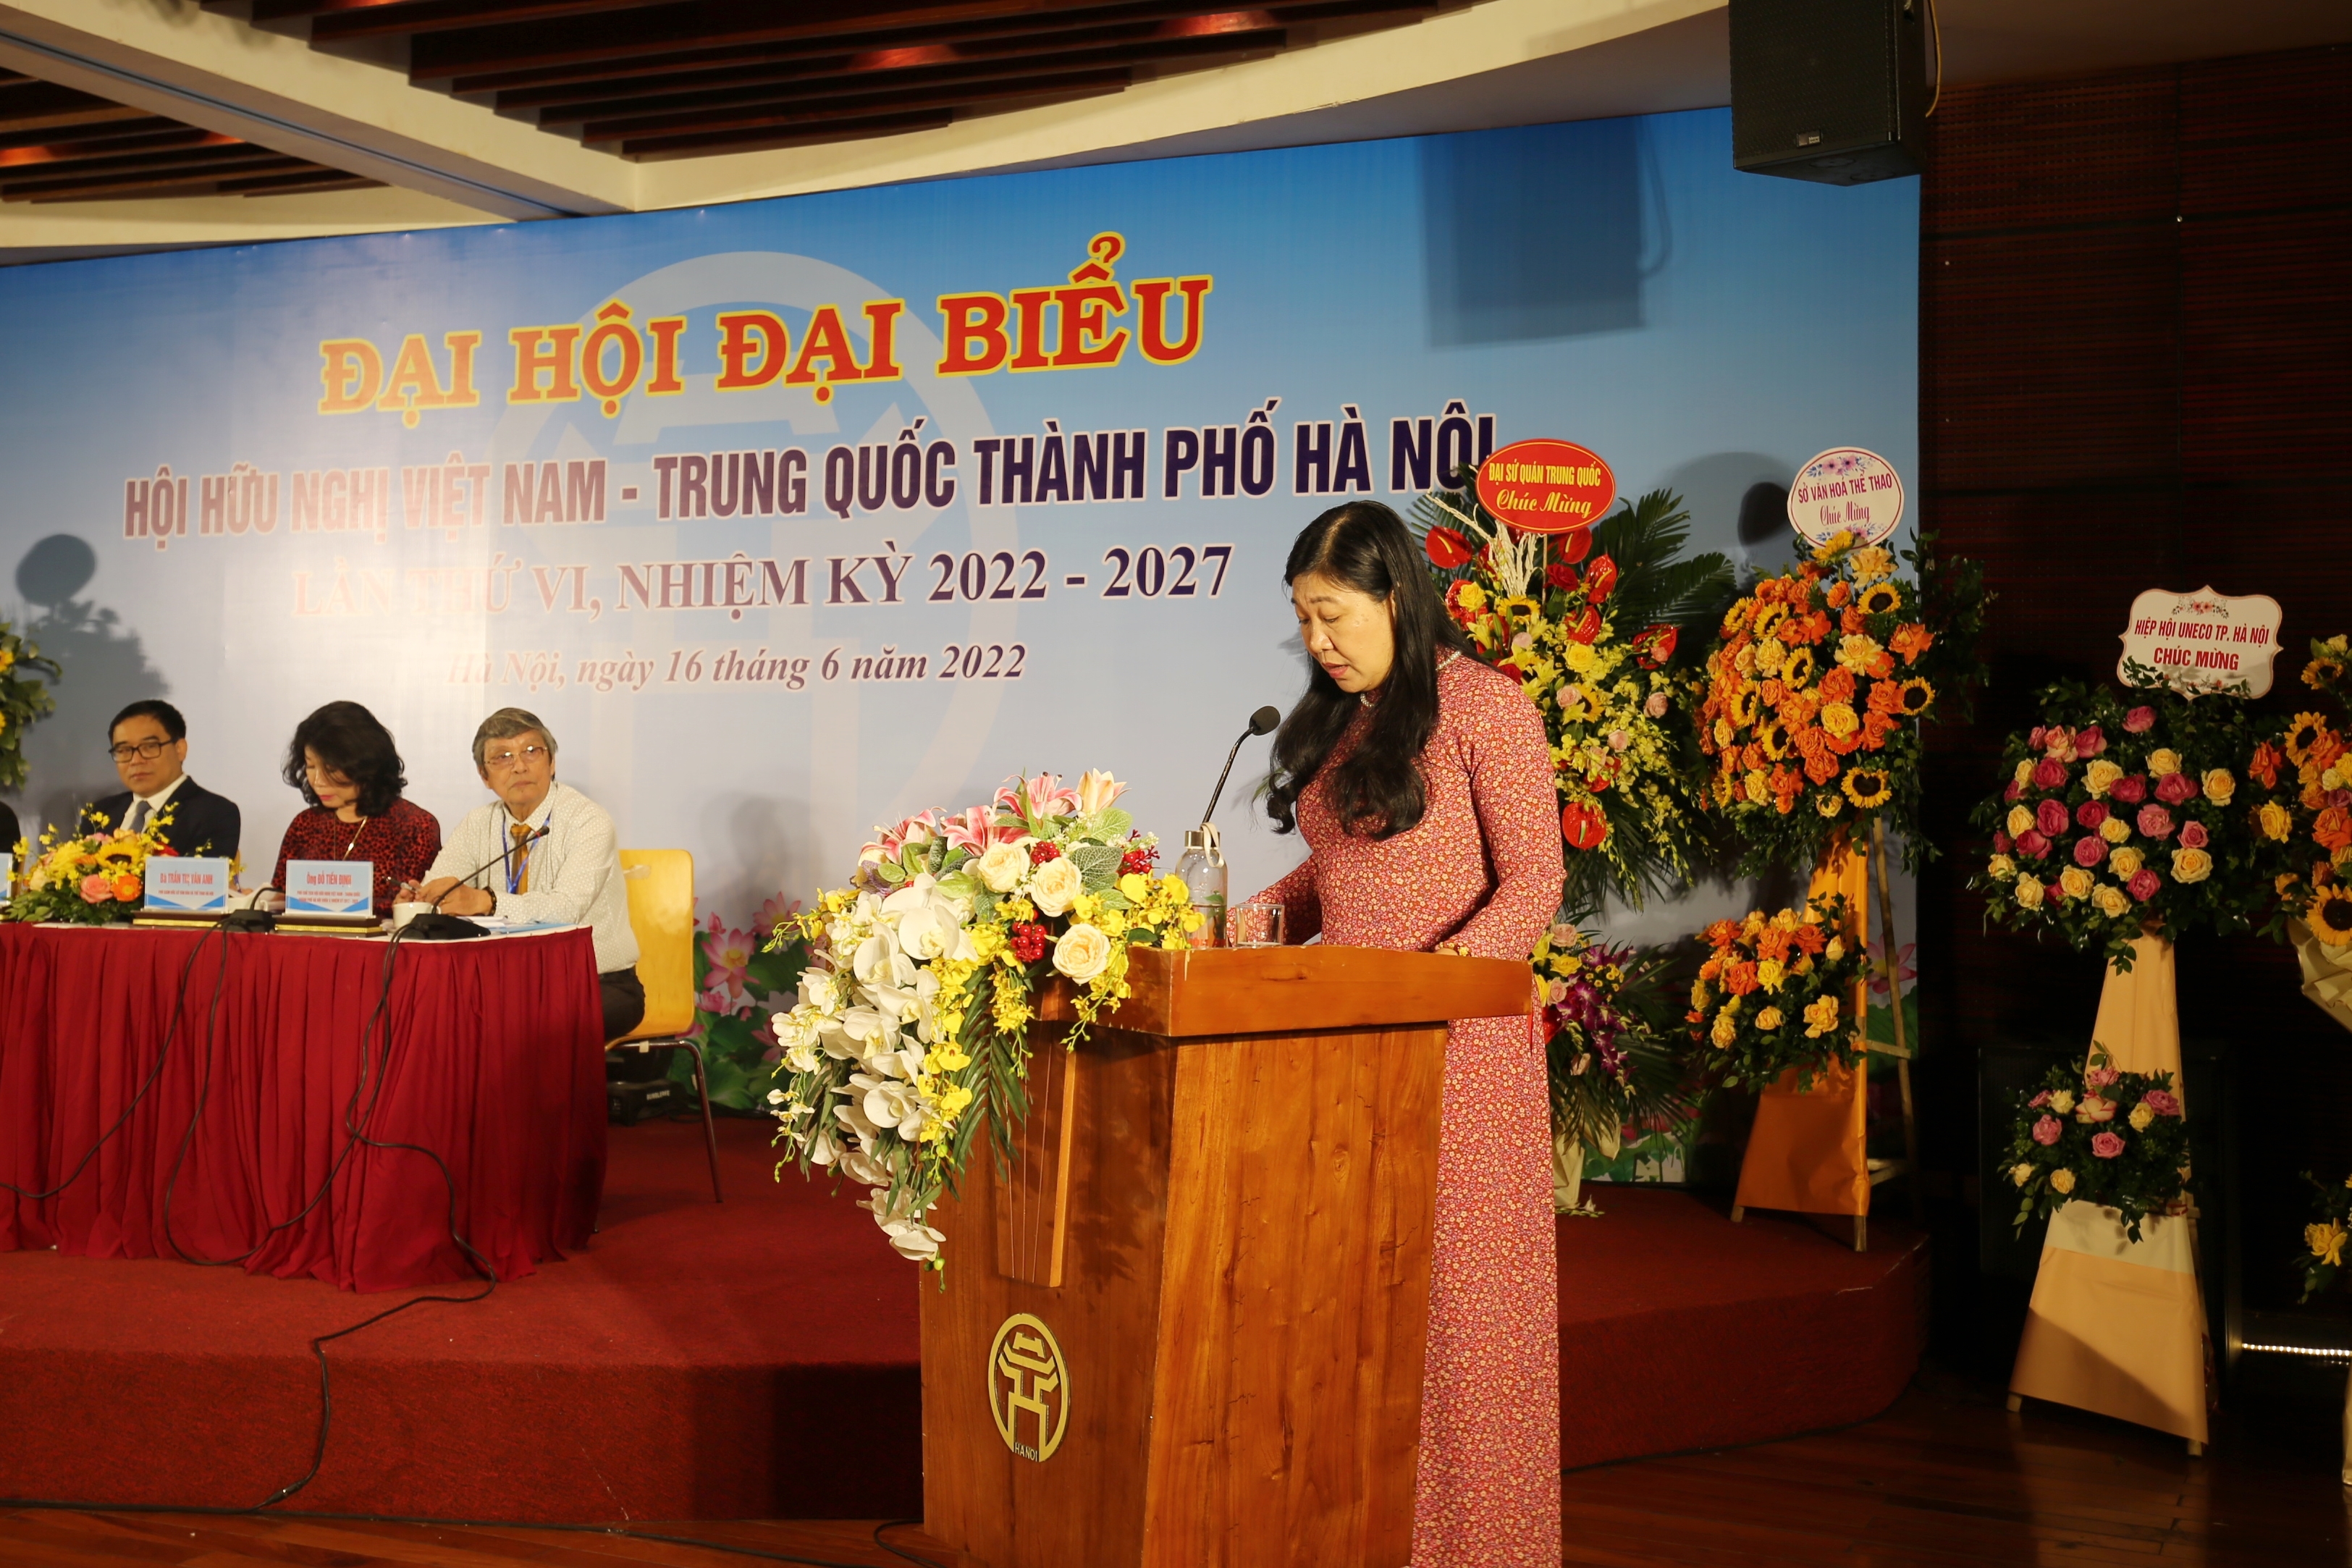 河内市越南祖国阵线委员会主席、河内市友好组织联合会主席阮兰香在大会上致辞